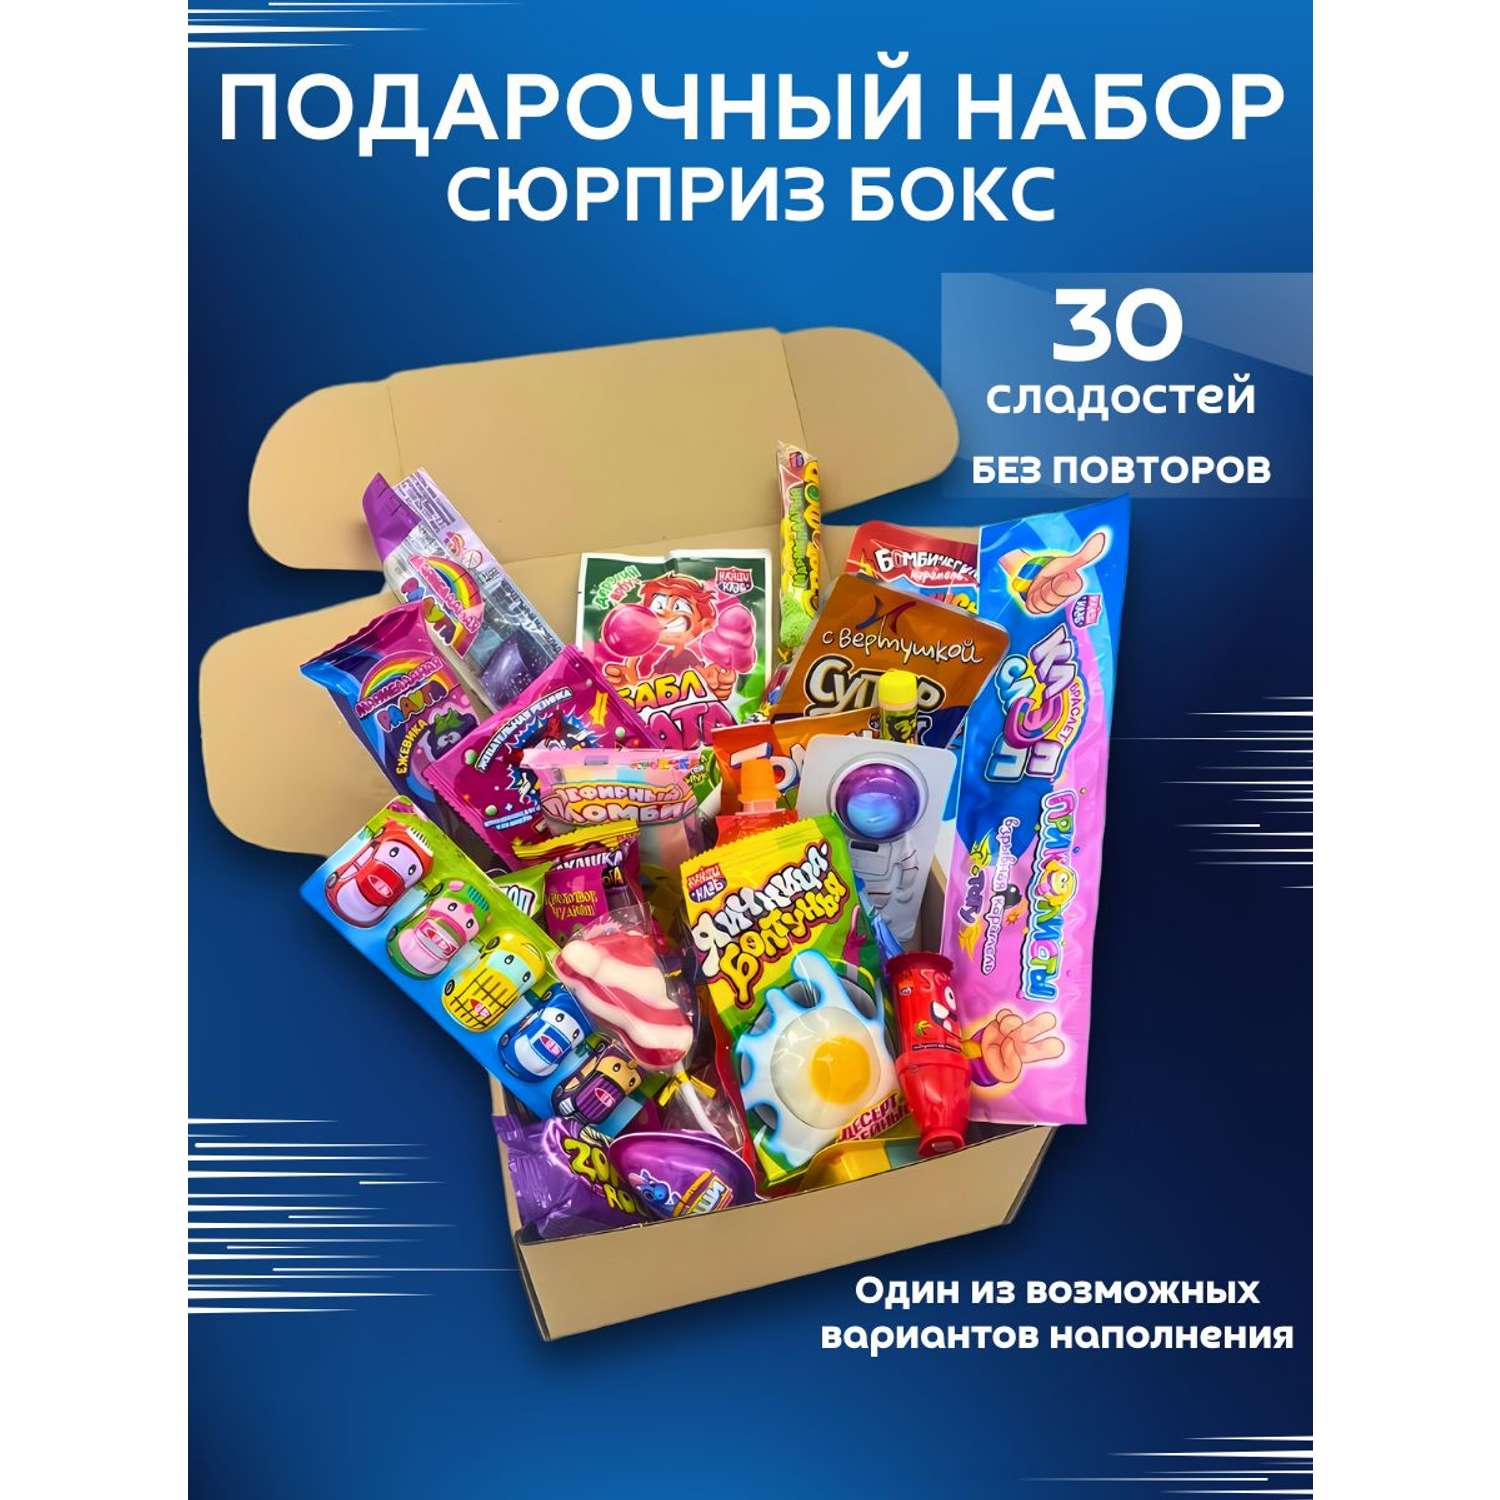 Сладкий подарочный бокс VKUSNODAY 30 конфет - фото 1